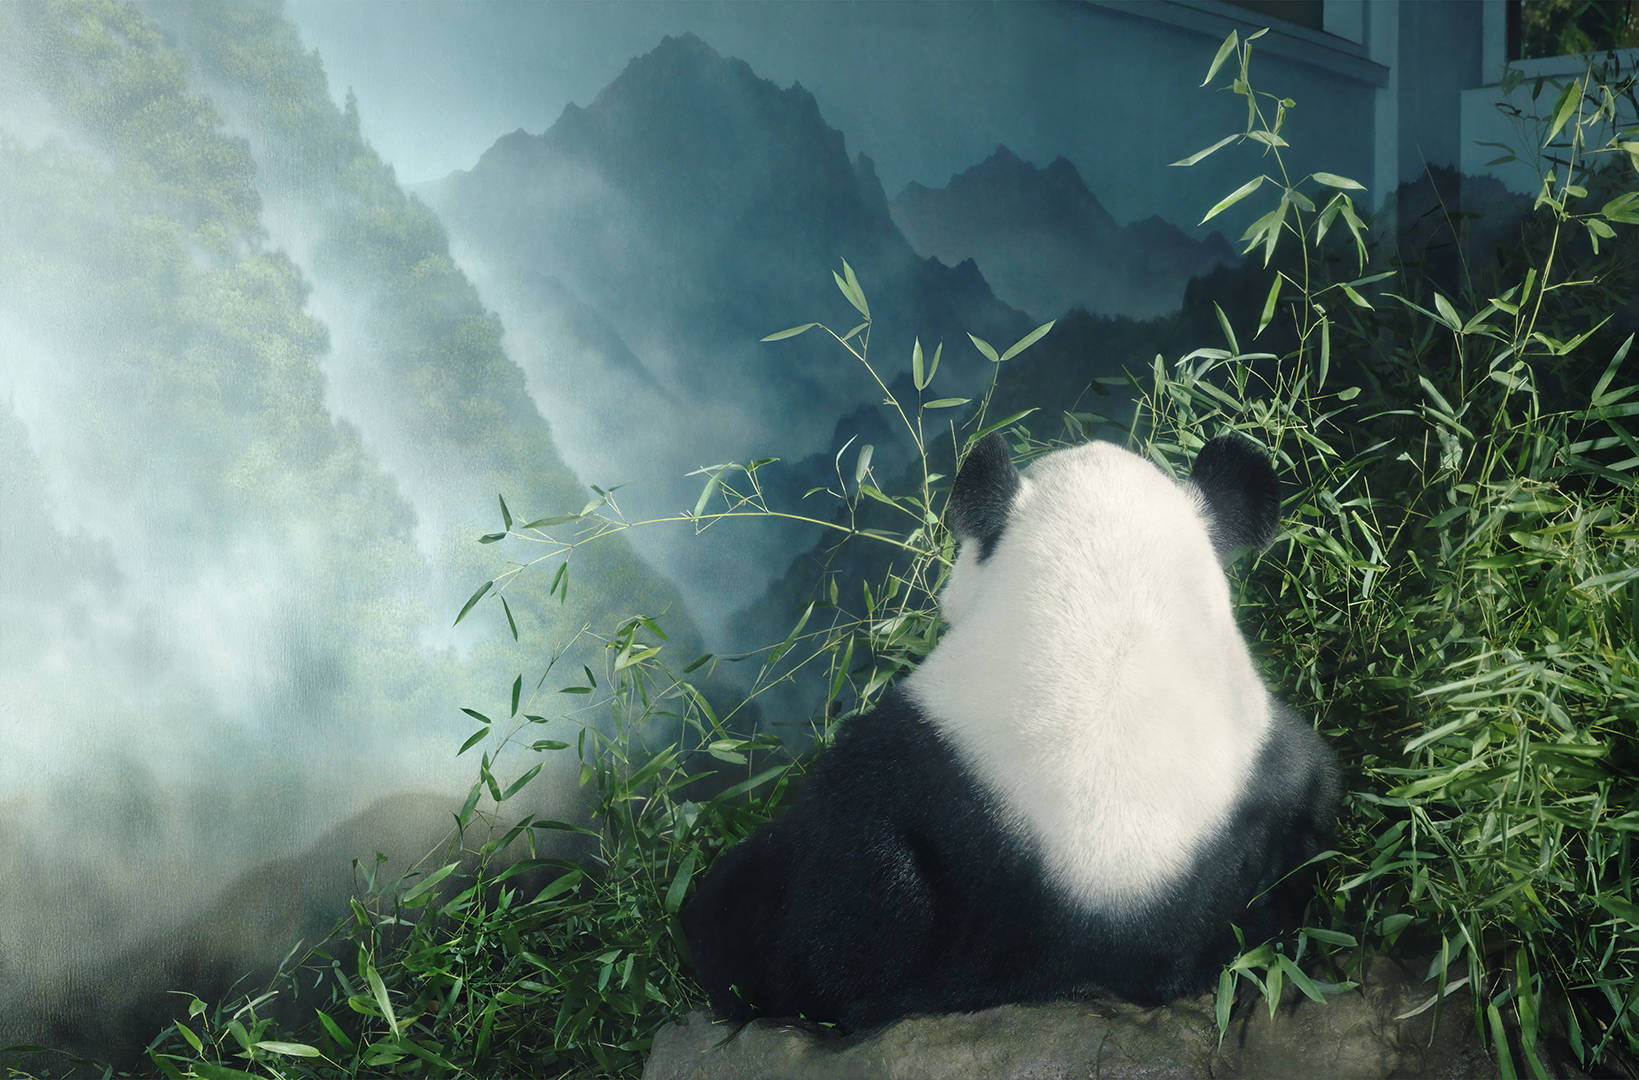 Com efeito, o futuro do panda gigante continua a ser precário. Existem, actualmente, apenas cerca de 20.000 indivíduos na natureza, dispersos por várias populações isoladas.